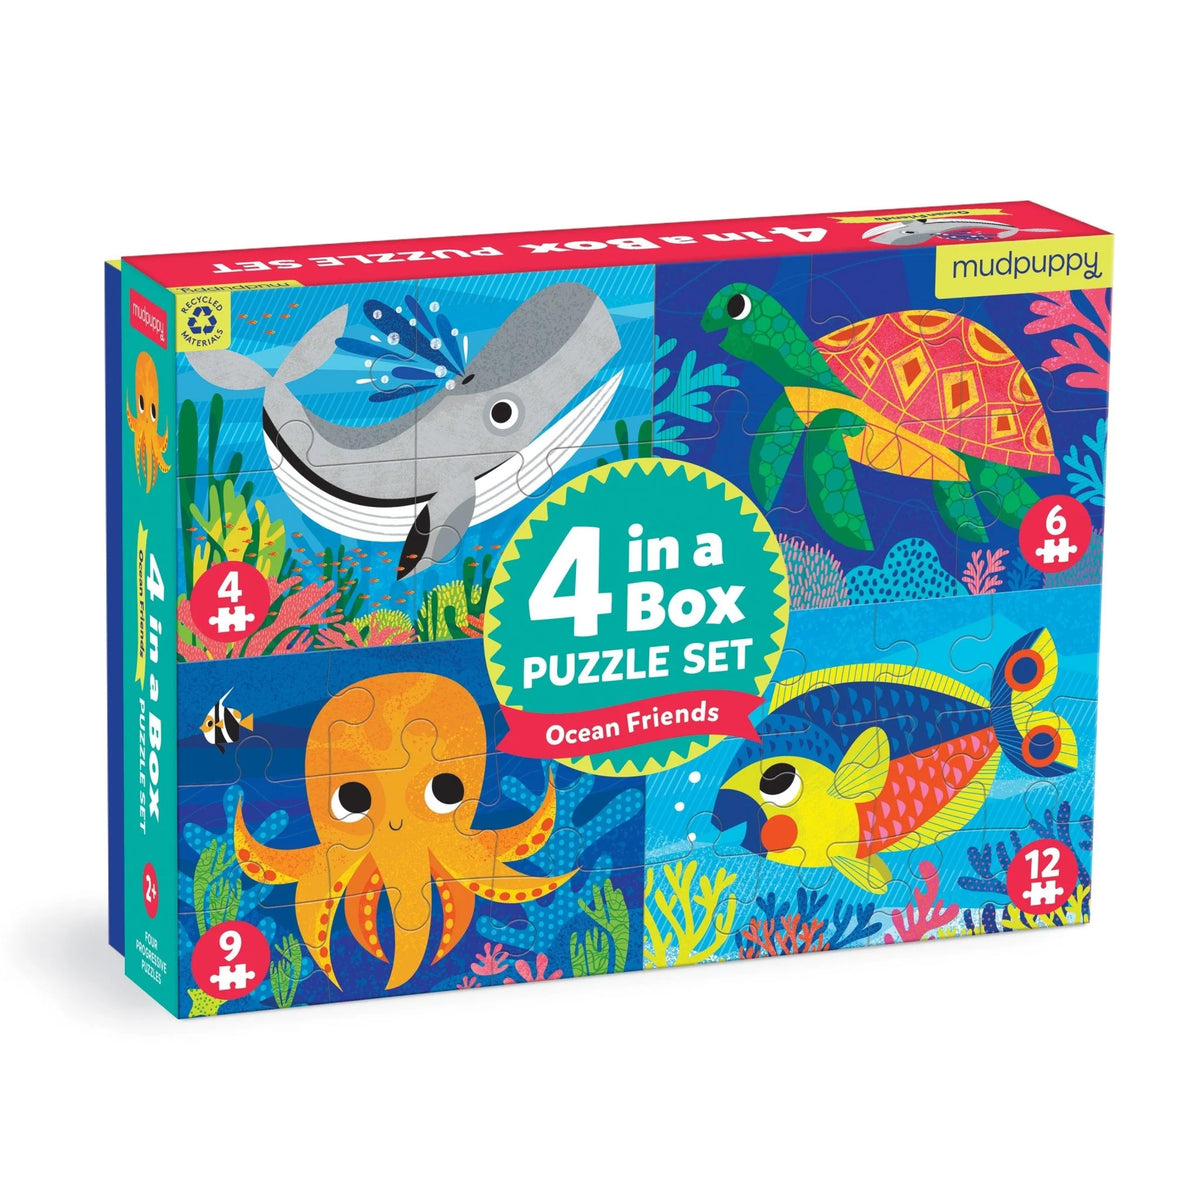 Mudpuppy 4-In-A-Box Puzzle Set - Ocean Friends